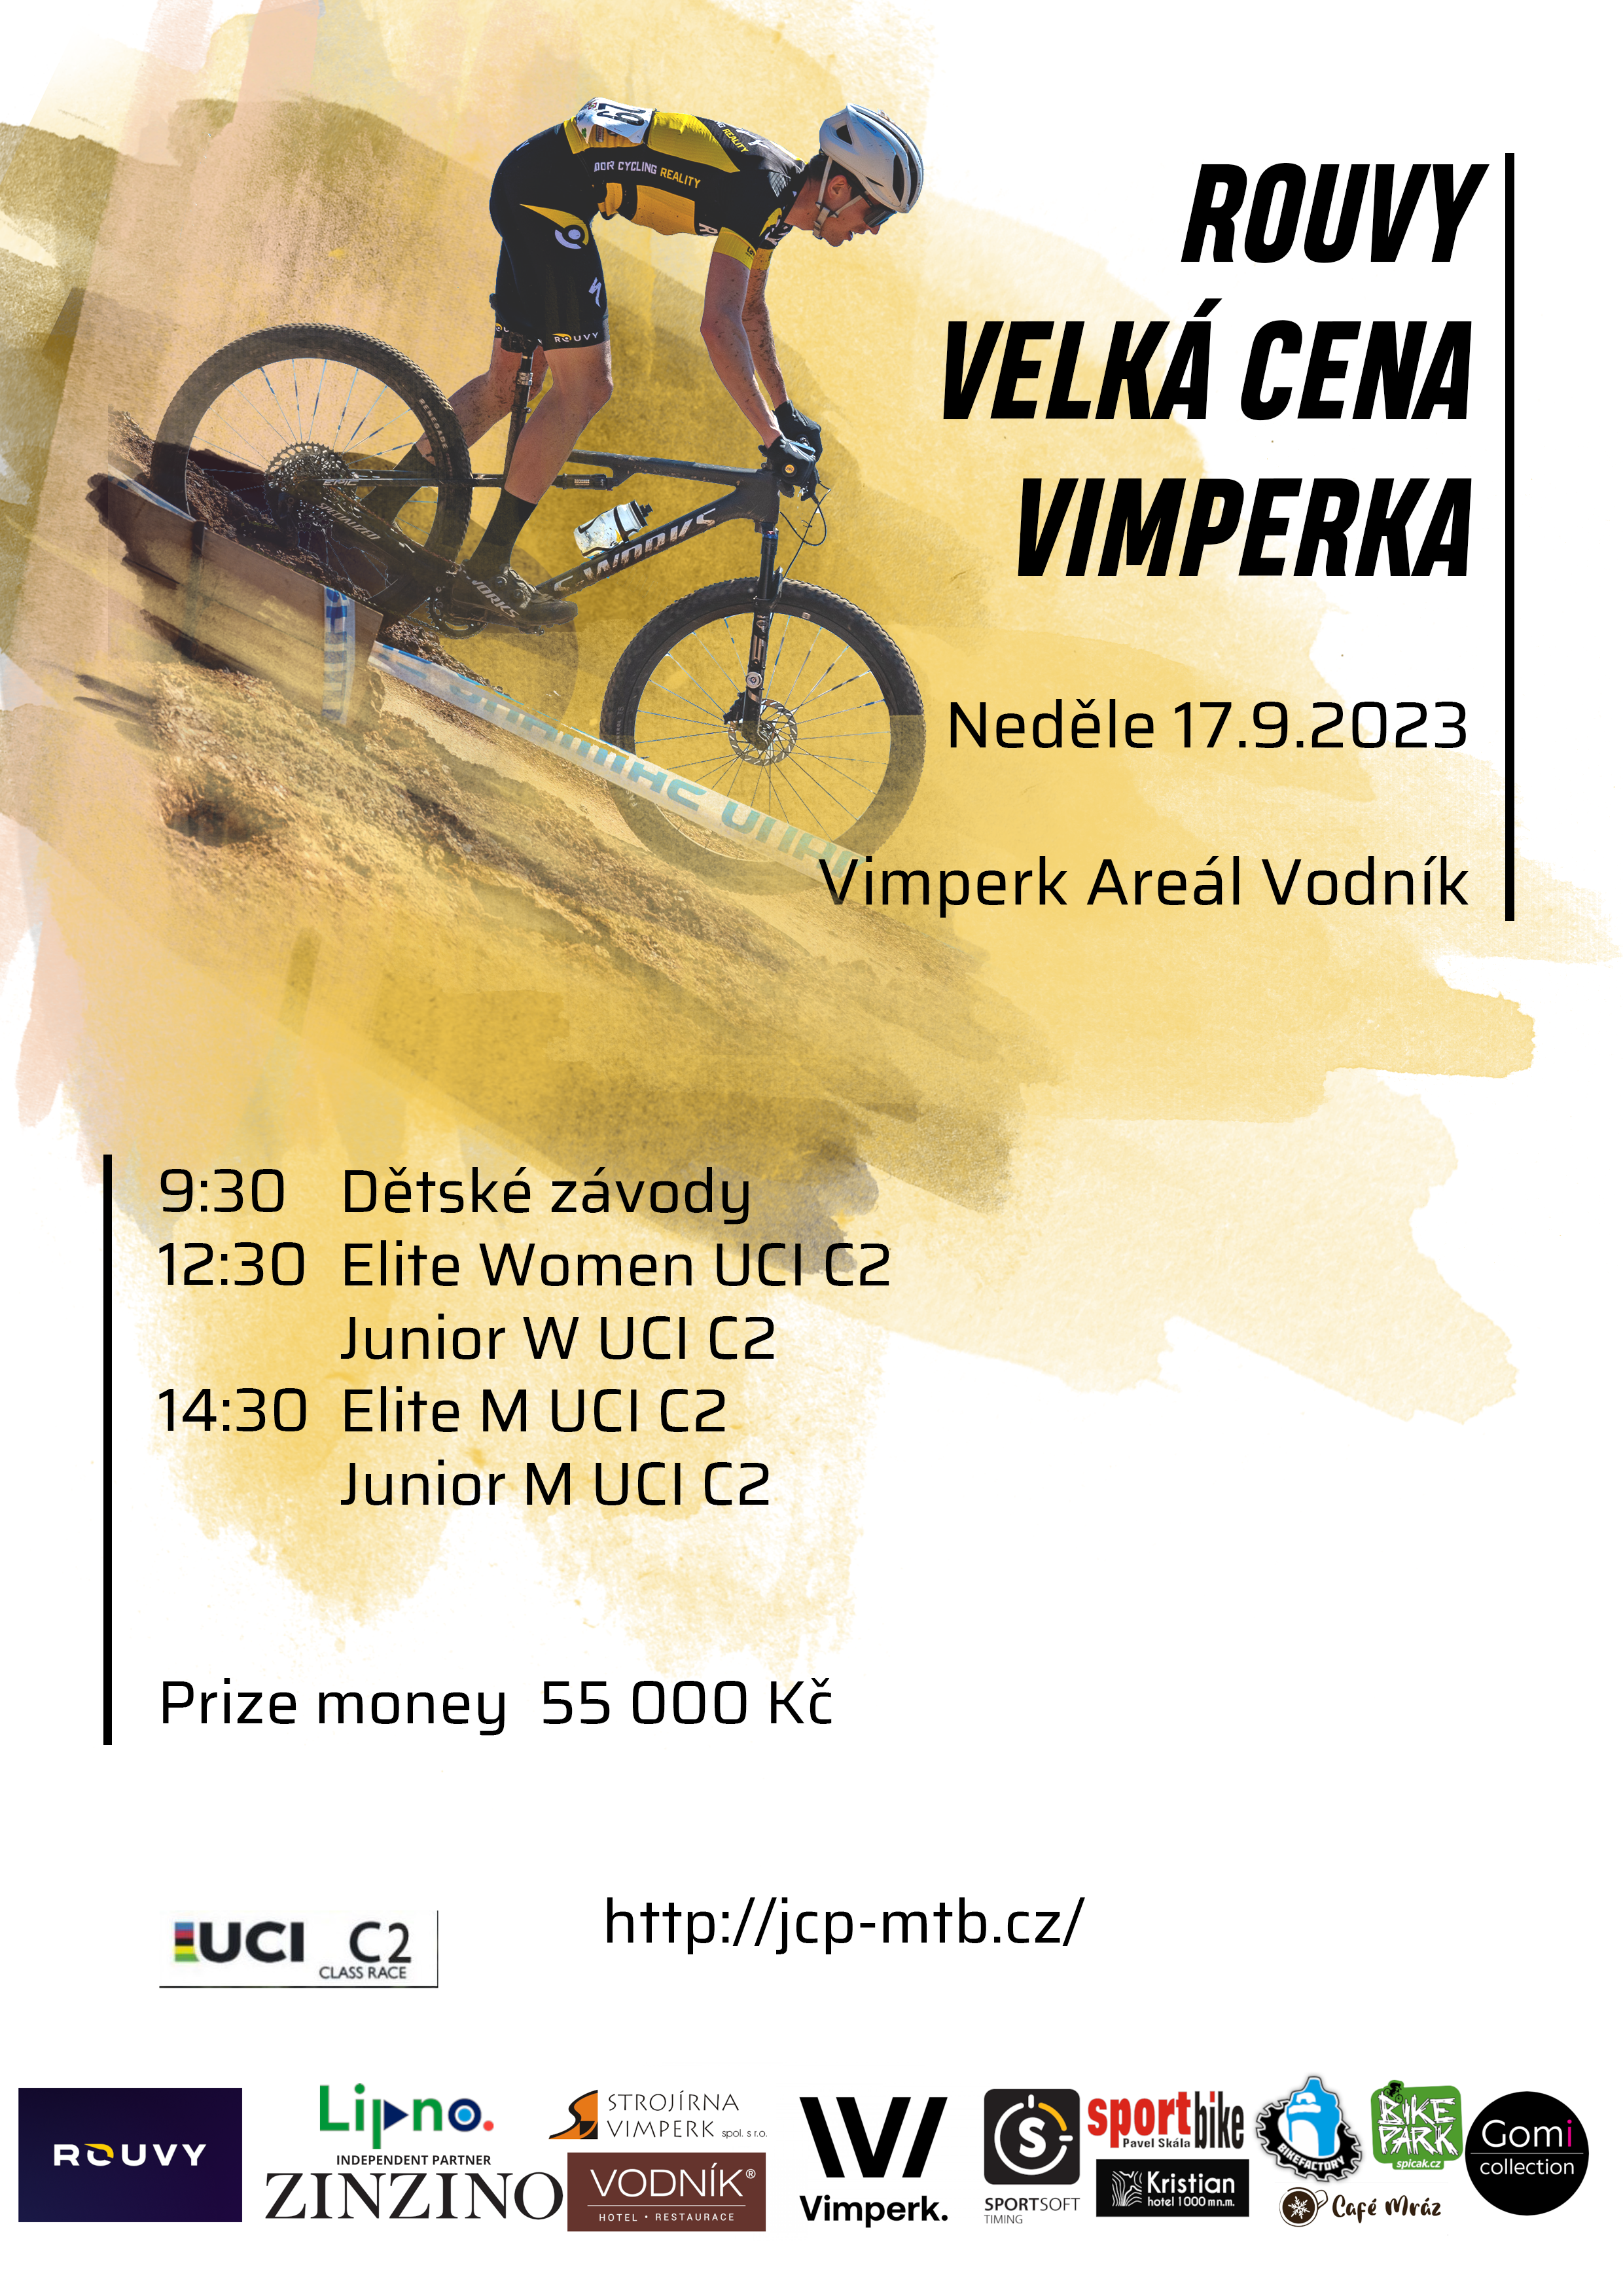 ROUVY Velká Cena Vimperka MTB XCO 2020 poster